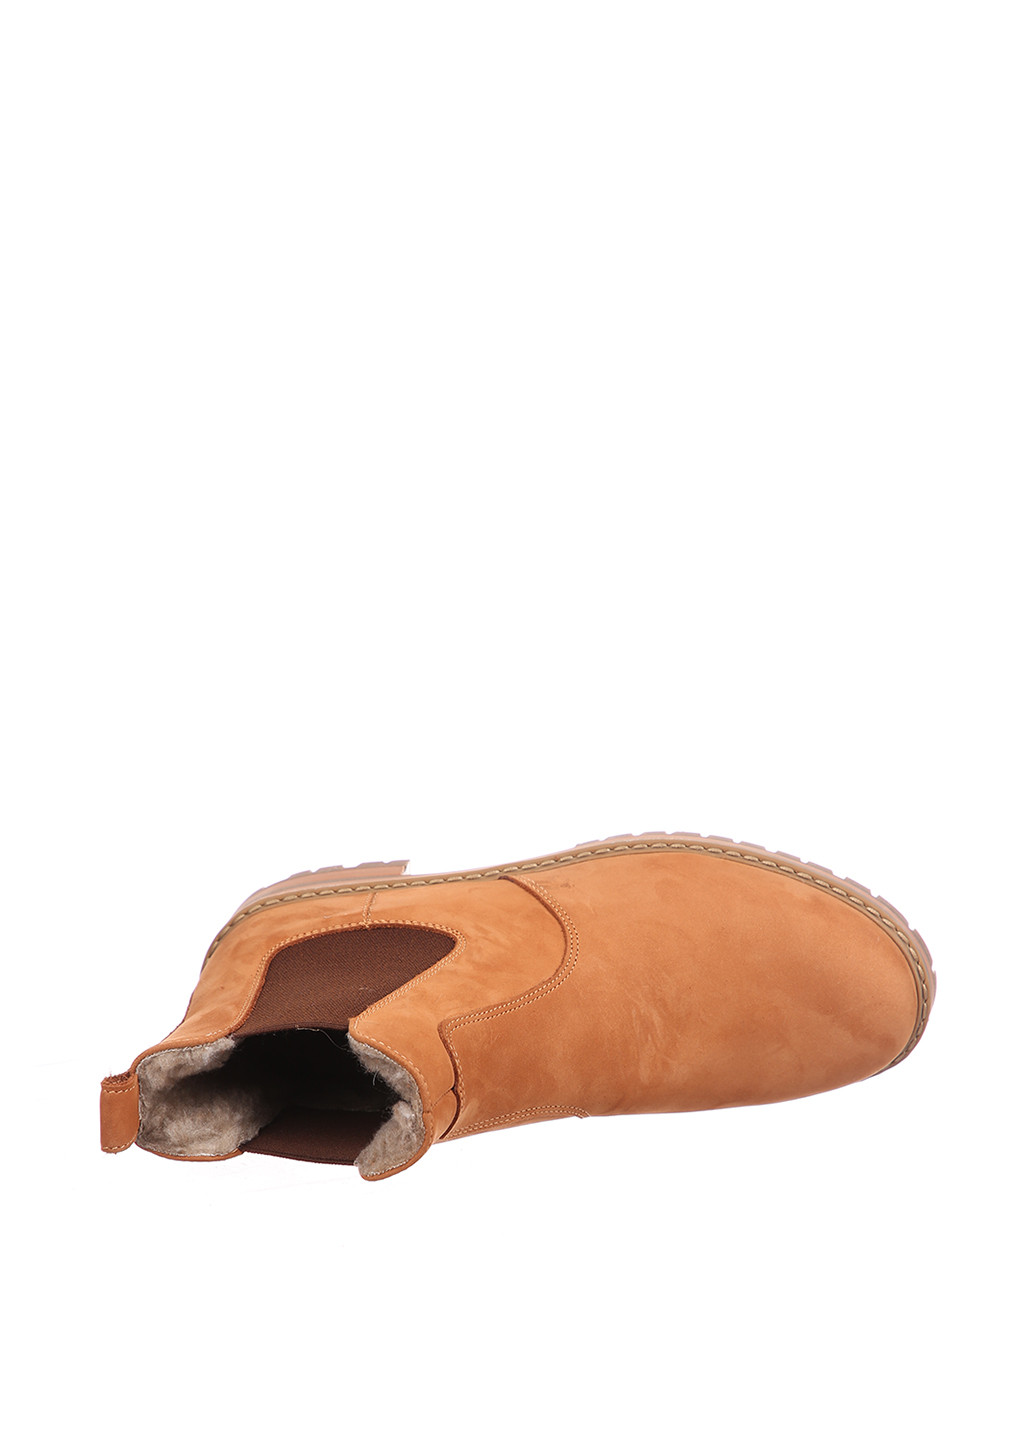 Зимние ботинки челси LaLeLi без декора из натуральной замши